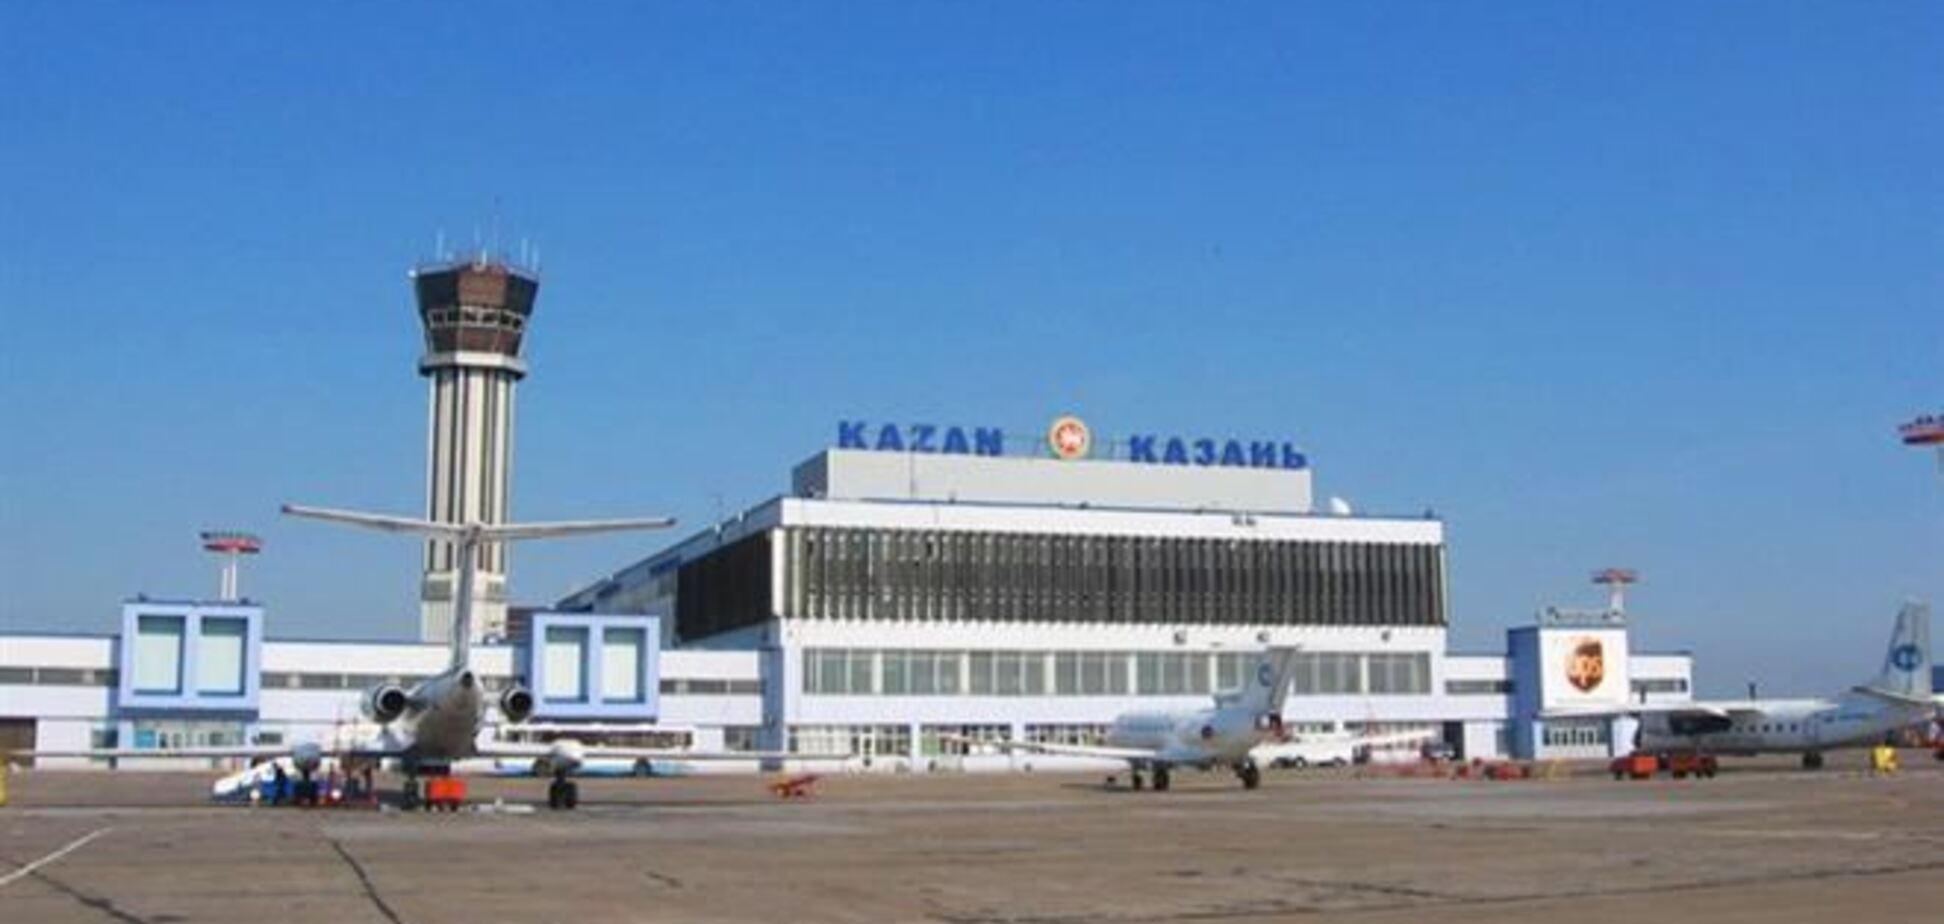 Названа предварительная версия крушения самолета в Казани